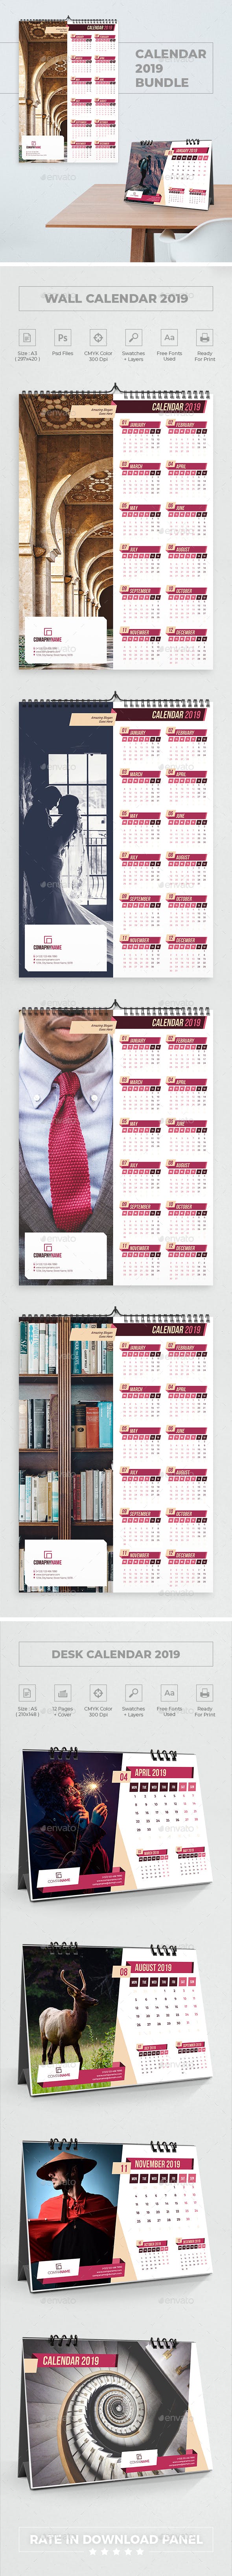 独特和现代几何元素2019日历台历模板 Unique And Modern Geometric Elements 2019 Calendar Desk Calendar Template插图